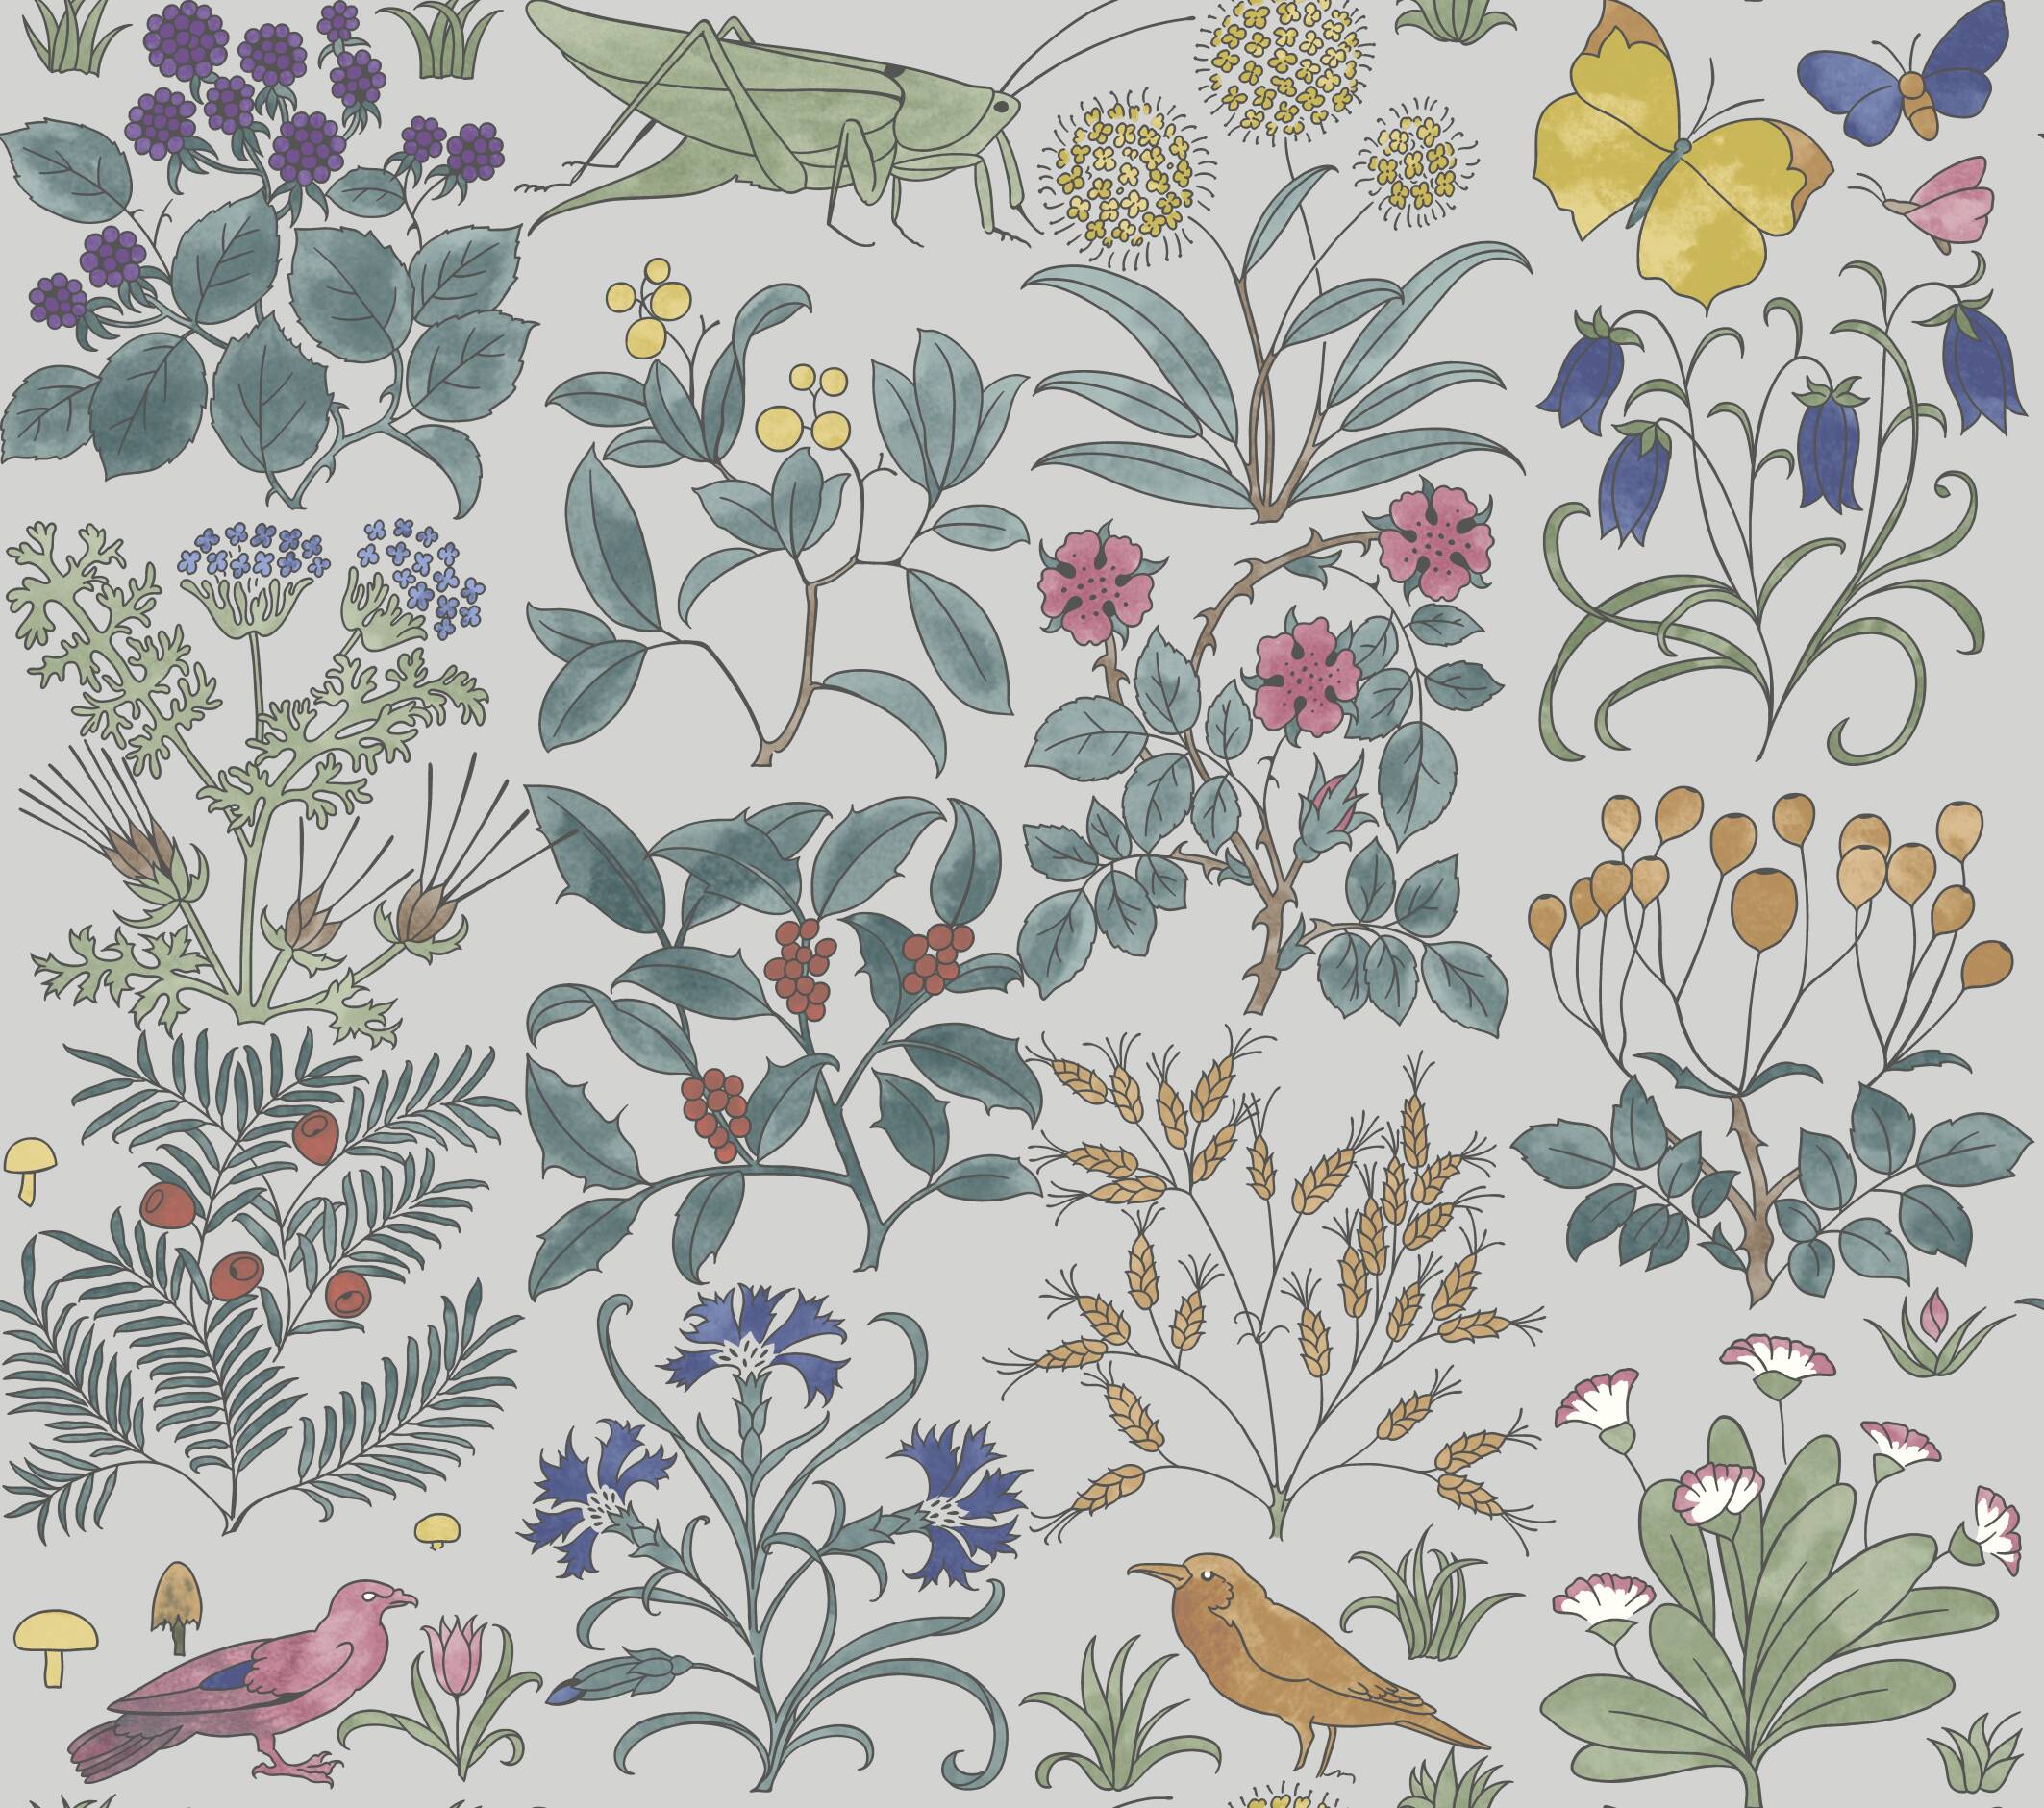 C.F.A Voysey - Apothecary's Garden Wallpaper